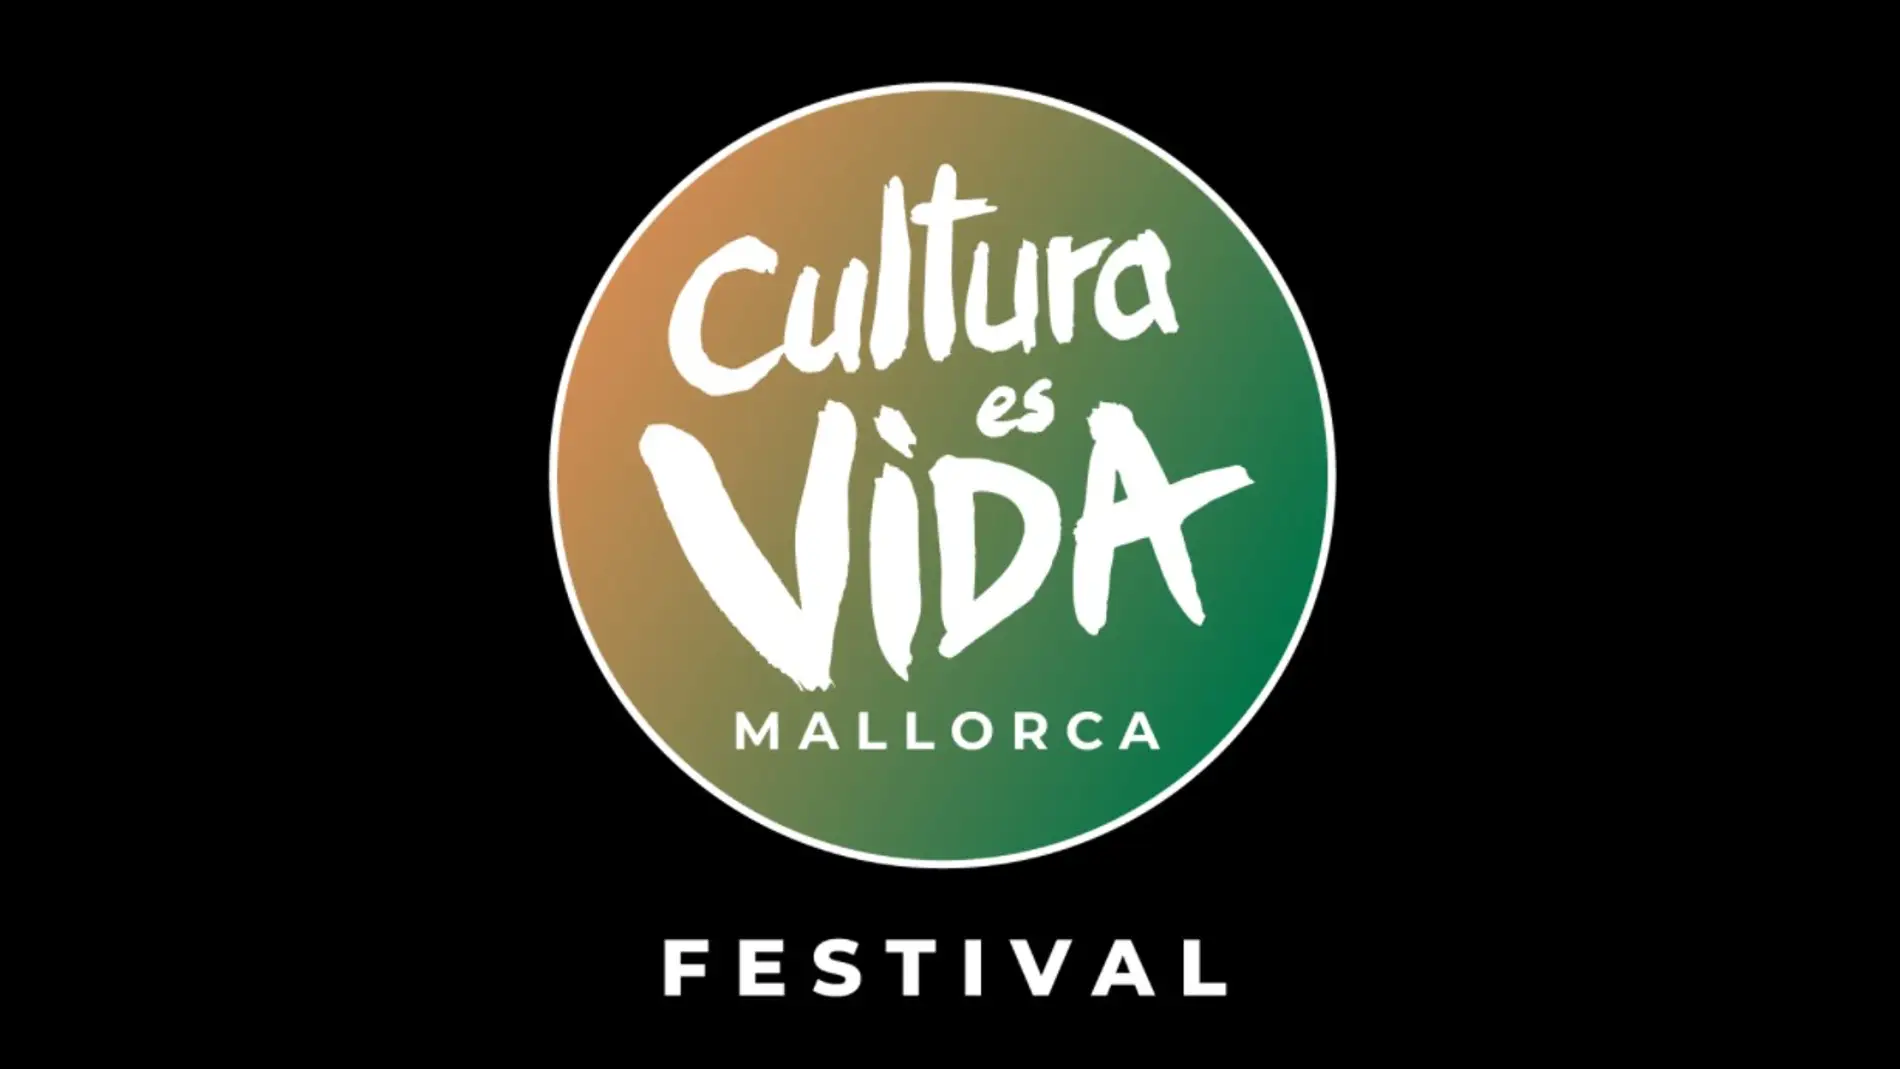 Europa FM, emisora oficial del festival Cultura es Vida Mallorca